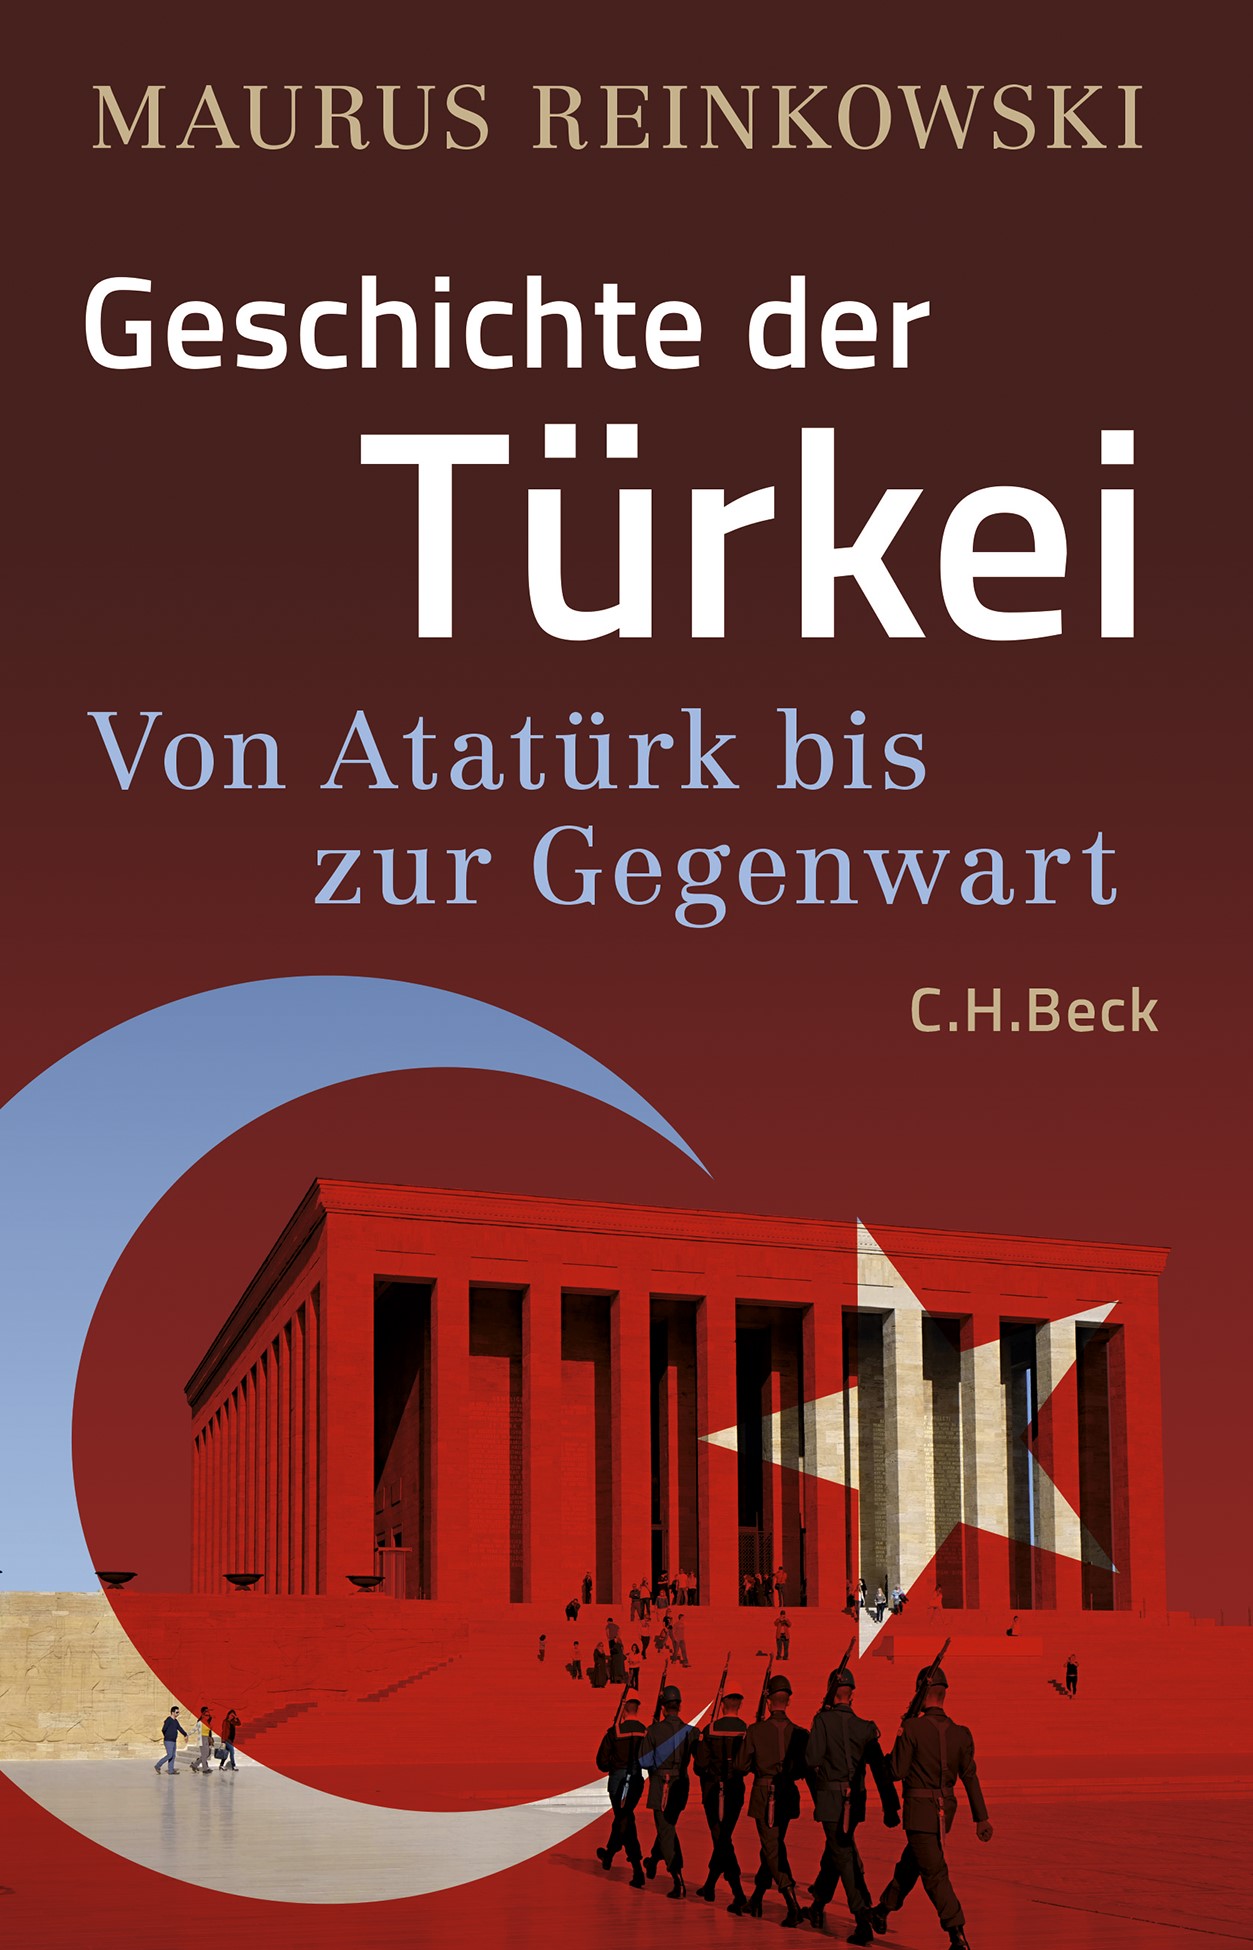 الغلاف الألماني لكتاب الباحث في الشأن الإسلامي ماوروس راينكوفسكي "تاريخ تركيا". Cover of Maurus Reinkowski's "Geschichte der Türkei" (published in German by C. H. Beck)